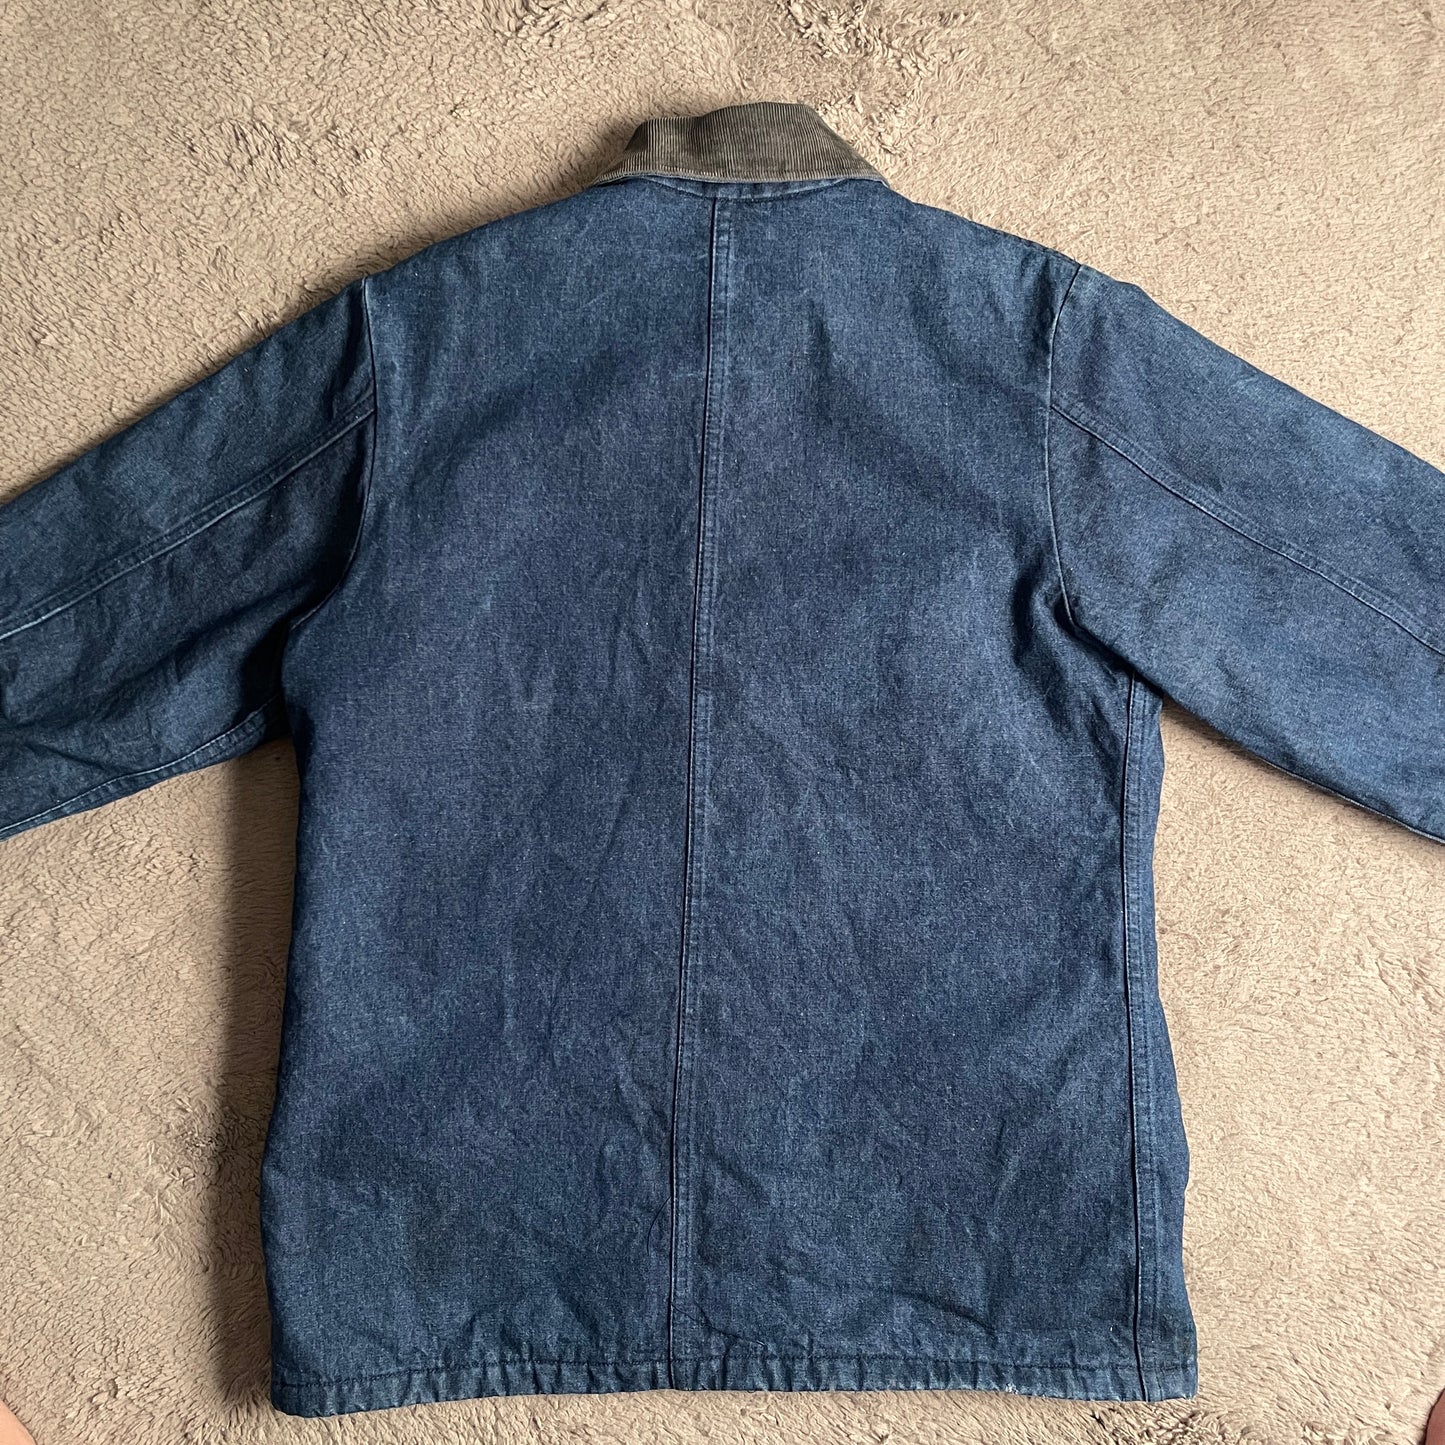 Vintage Dickies Denim/Corduroy Chore Coat Jacket (XL)